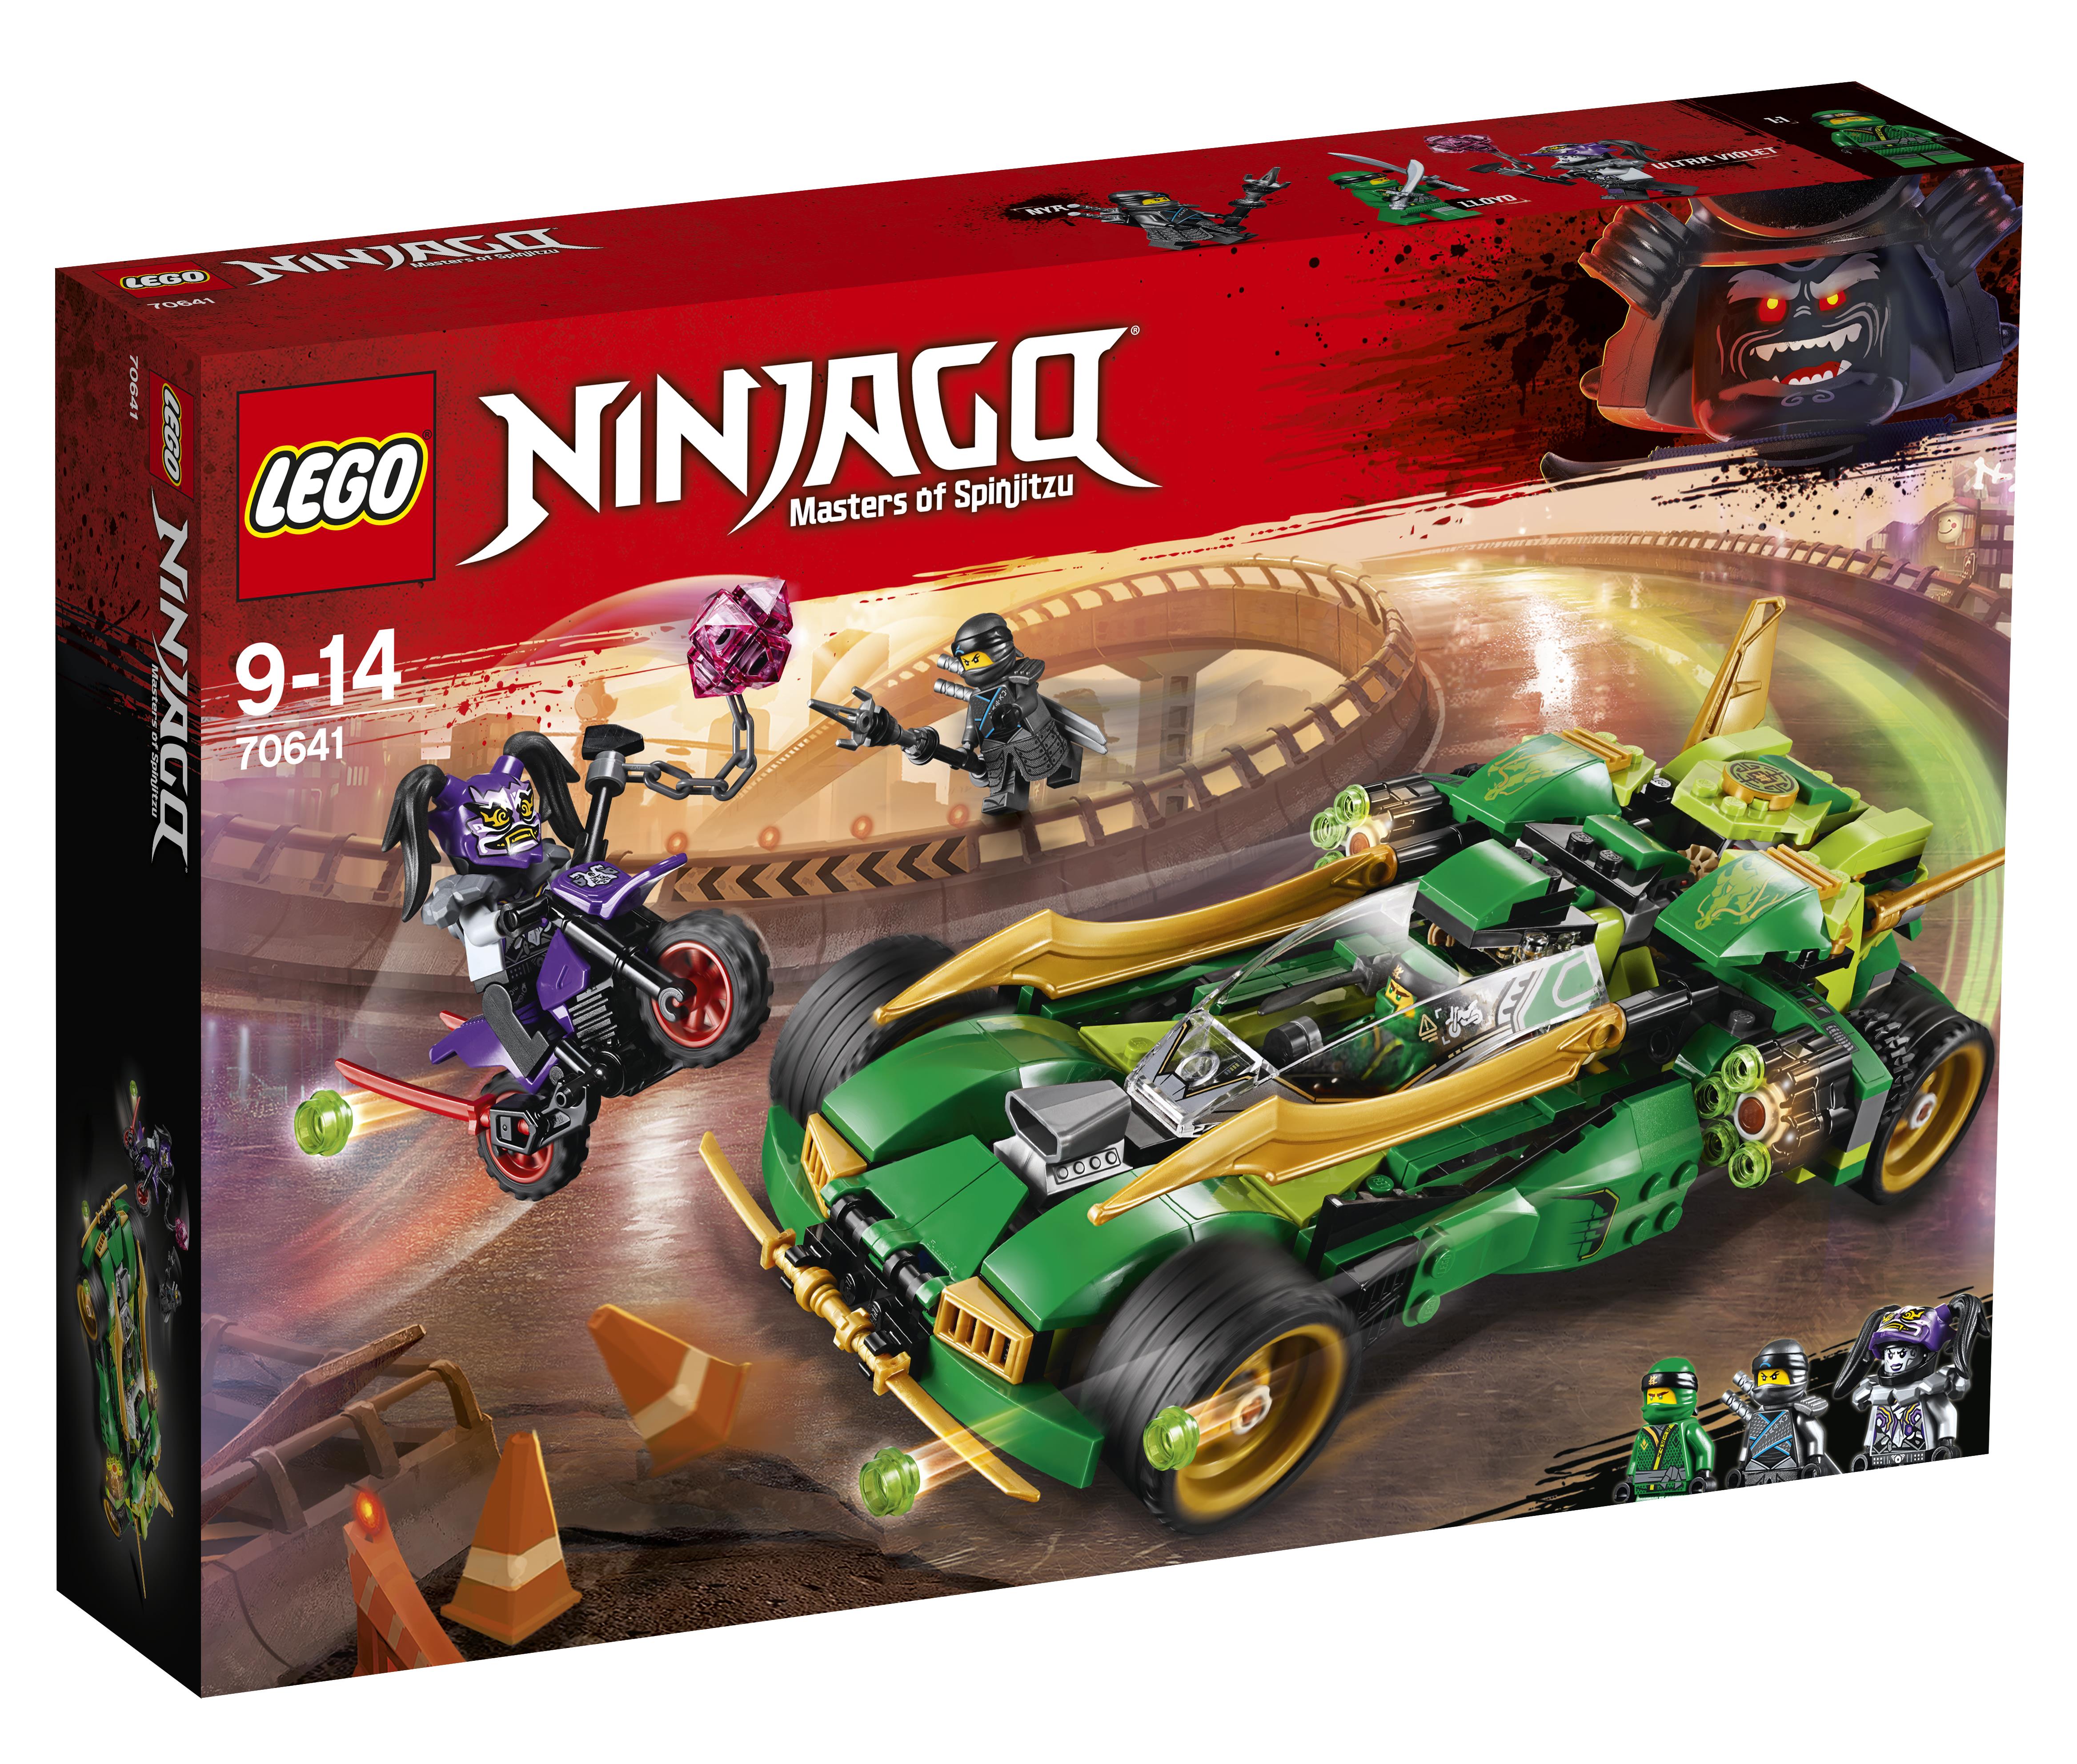 LEGO Ninjago Nightcrawler Ninja